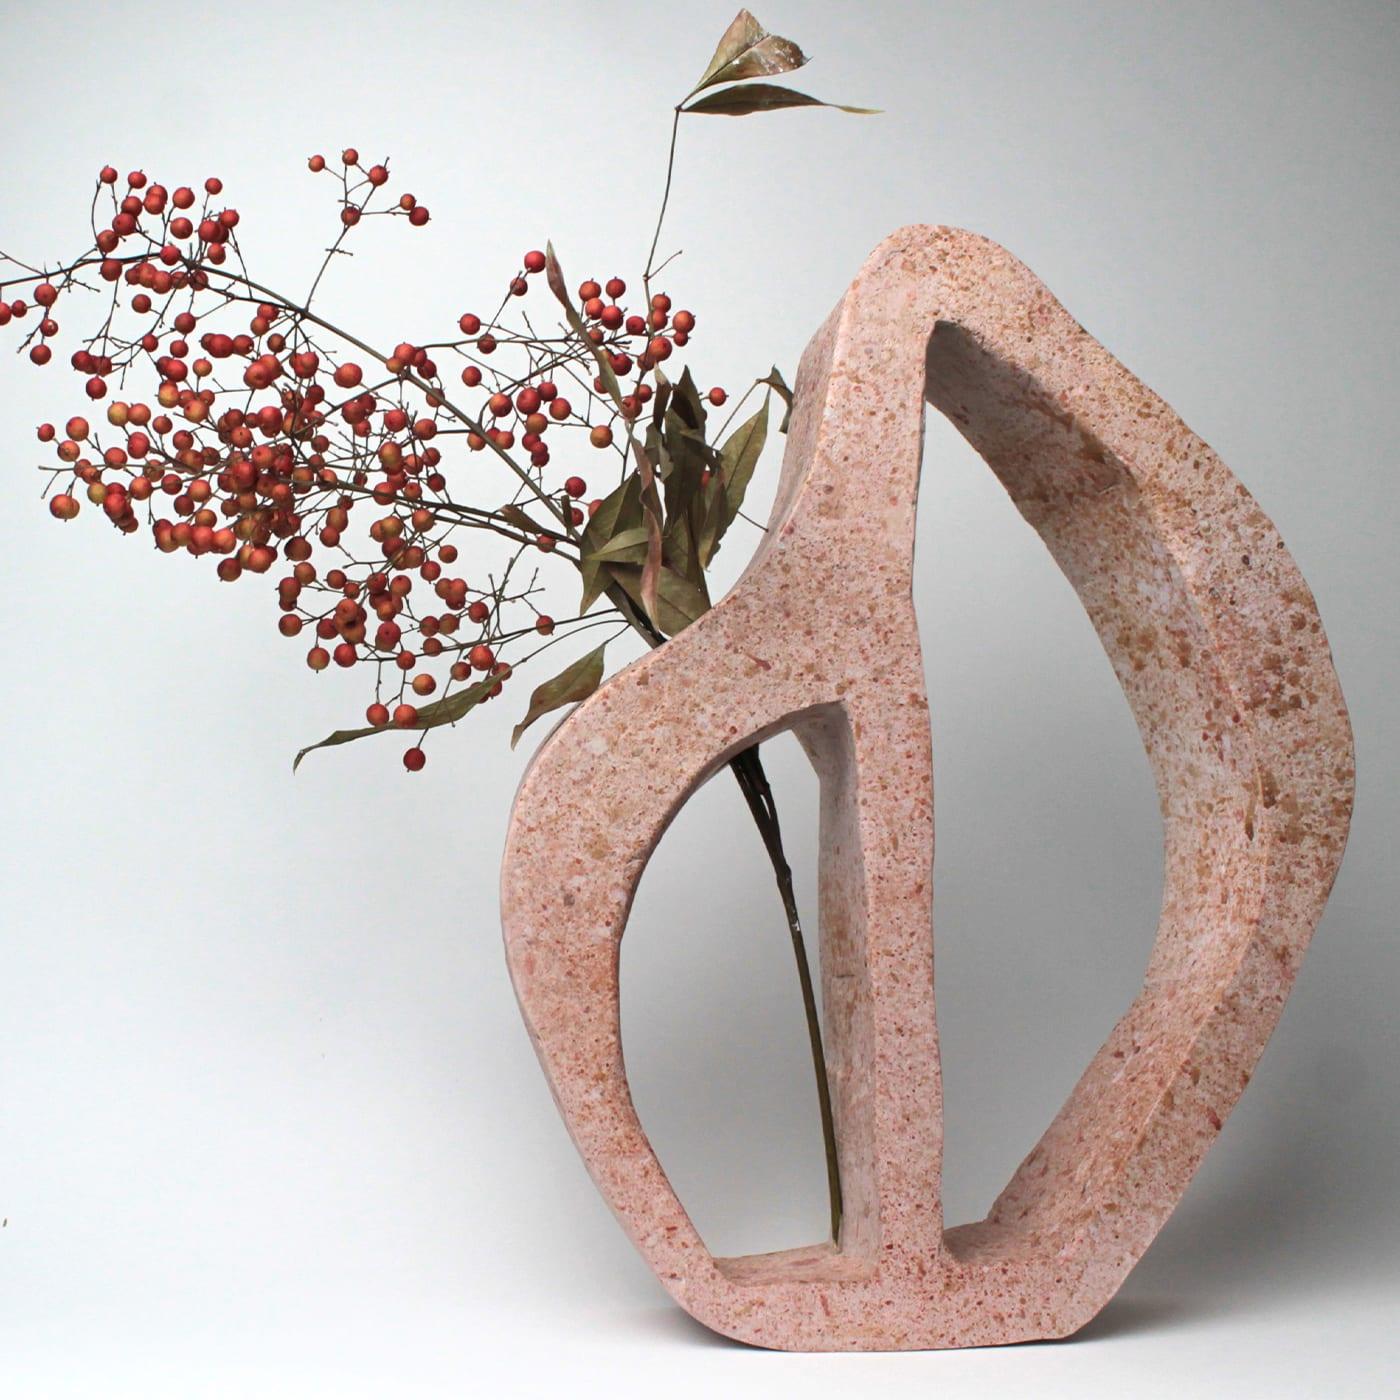 Marchesa Gray ist elegant und sanft. Die Farbe ähnelt den natürlichen Granitfelsen. Sein asymmetrisches Design verbindet die Eleganz der Kurven mit der Rohheit des Materials. Die Leere in seinem Kern deutet auf die Funktion hin. 
Marchesa Rose ist